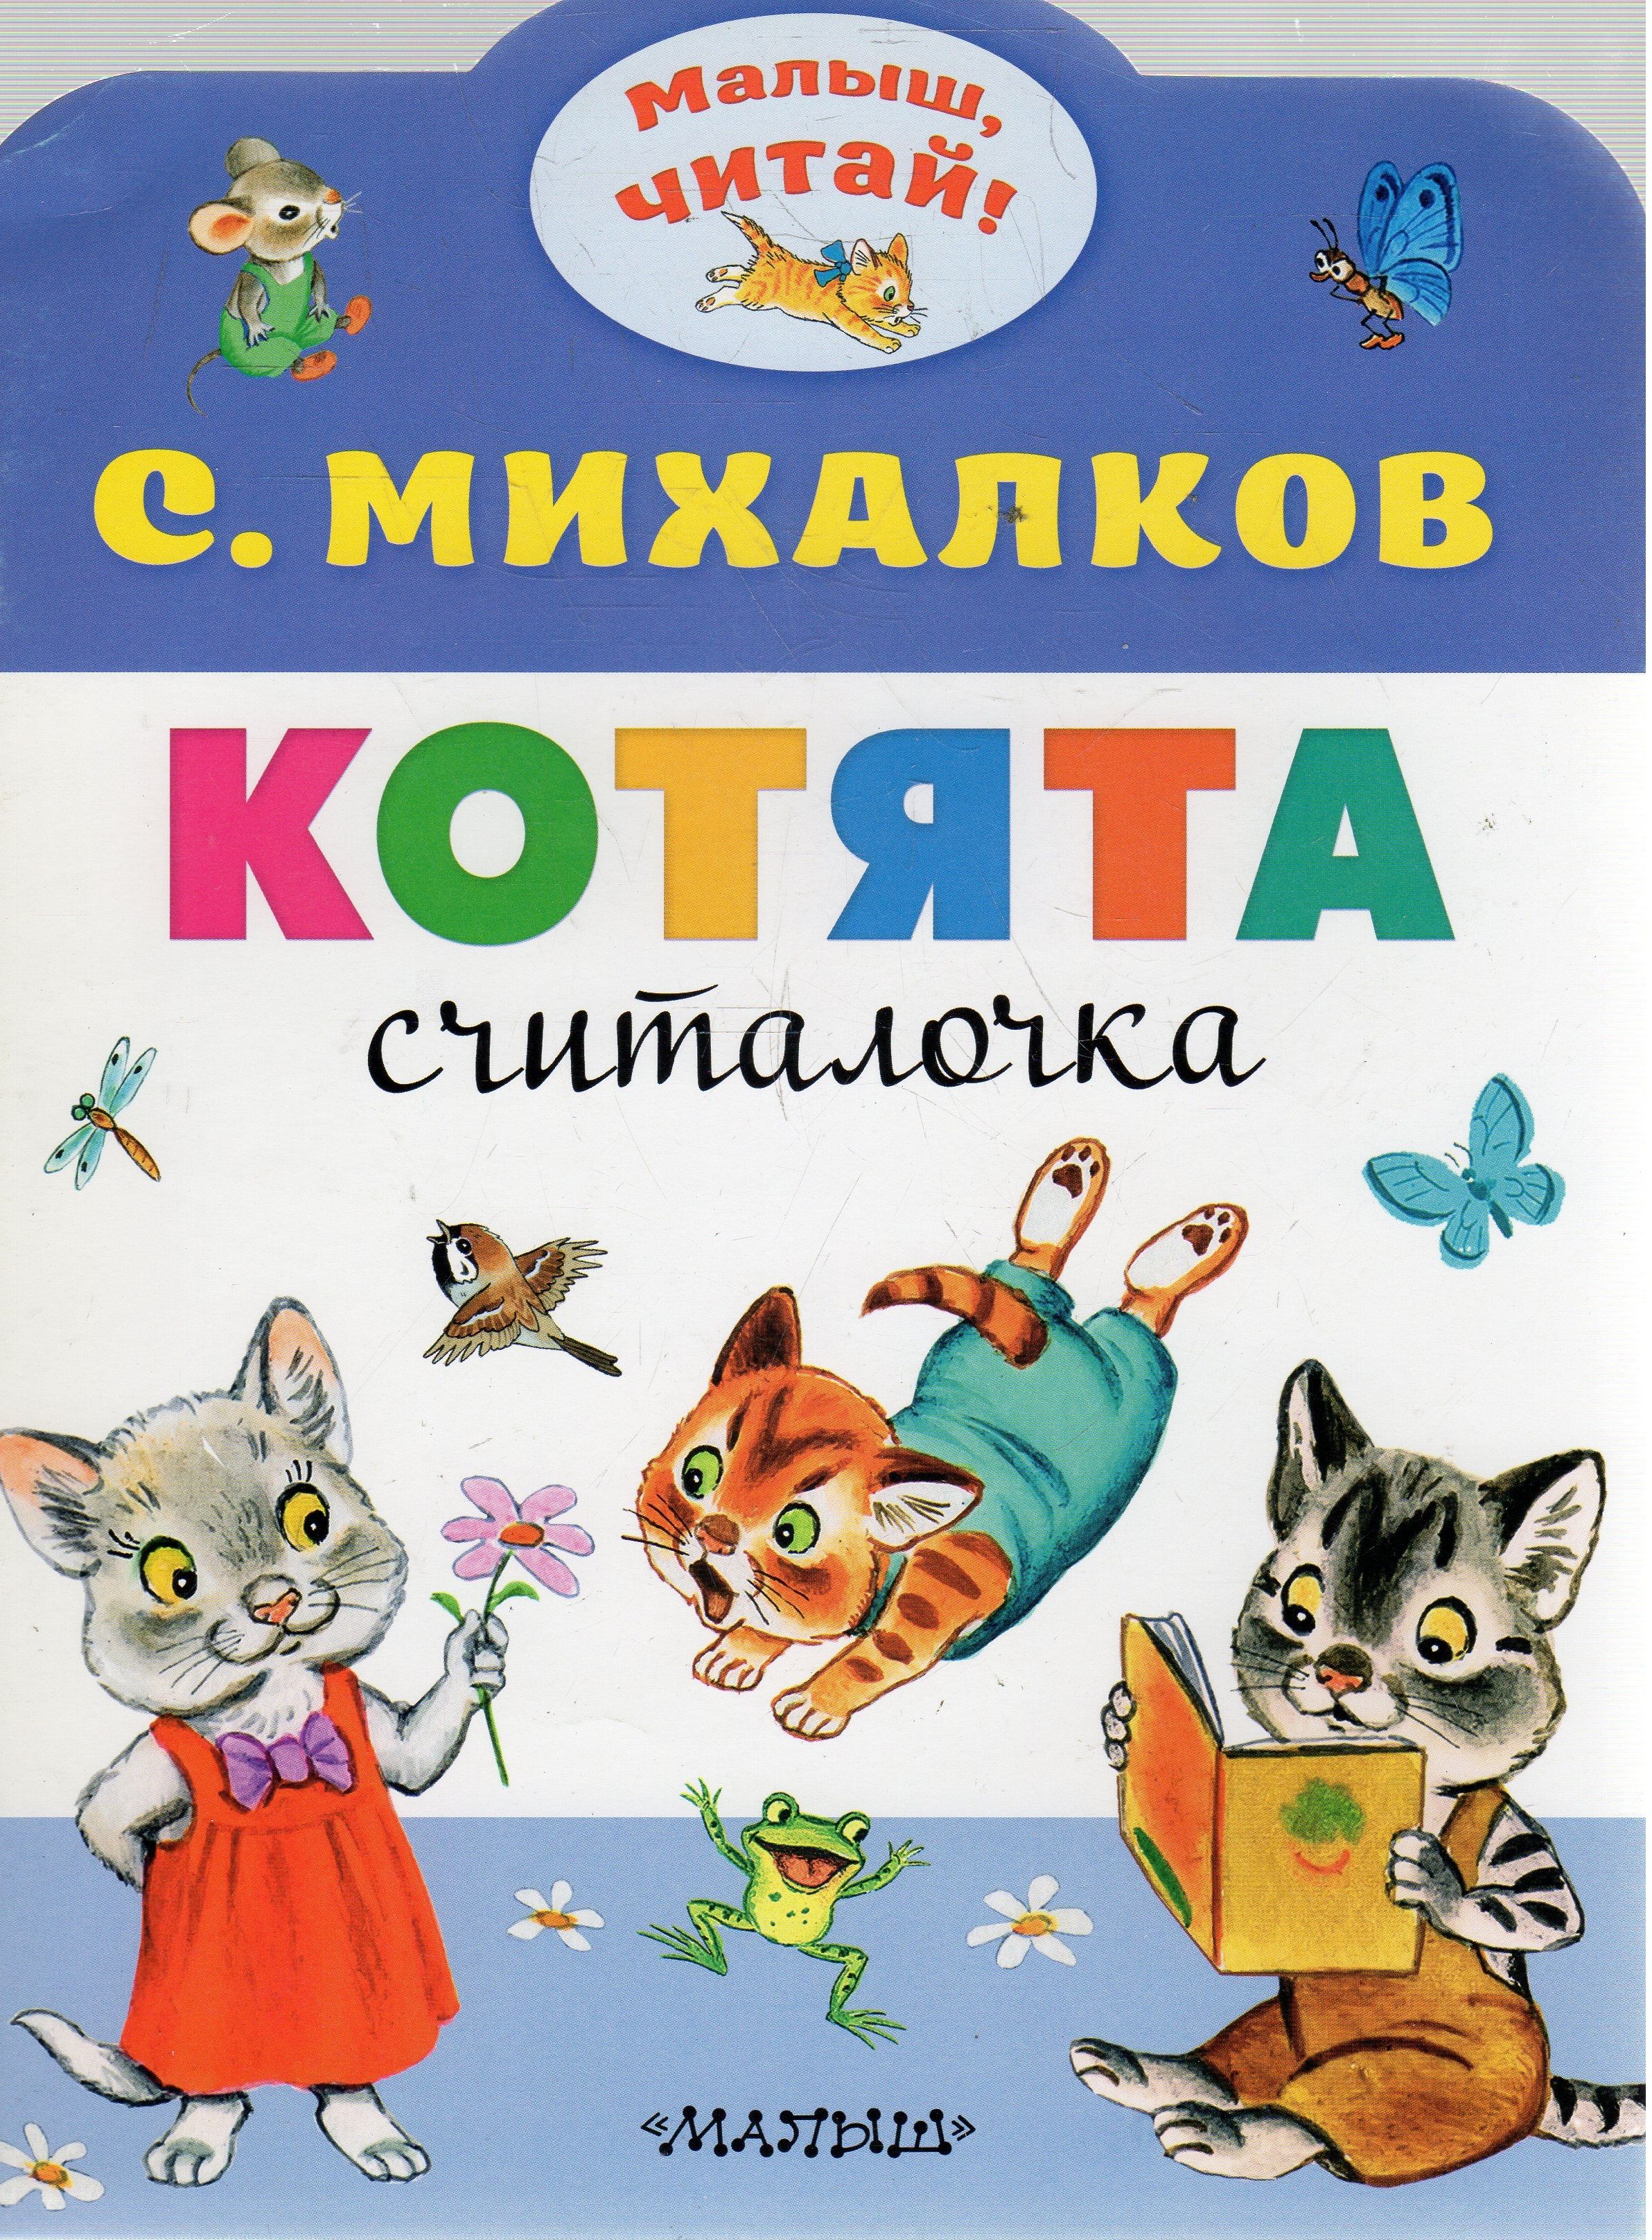 Котята михалкова читать. Книга котята (Михалков с.в.). Книга Михалкова котята. Михалков считалочка котята.